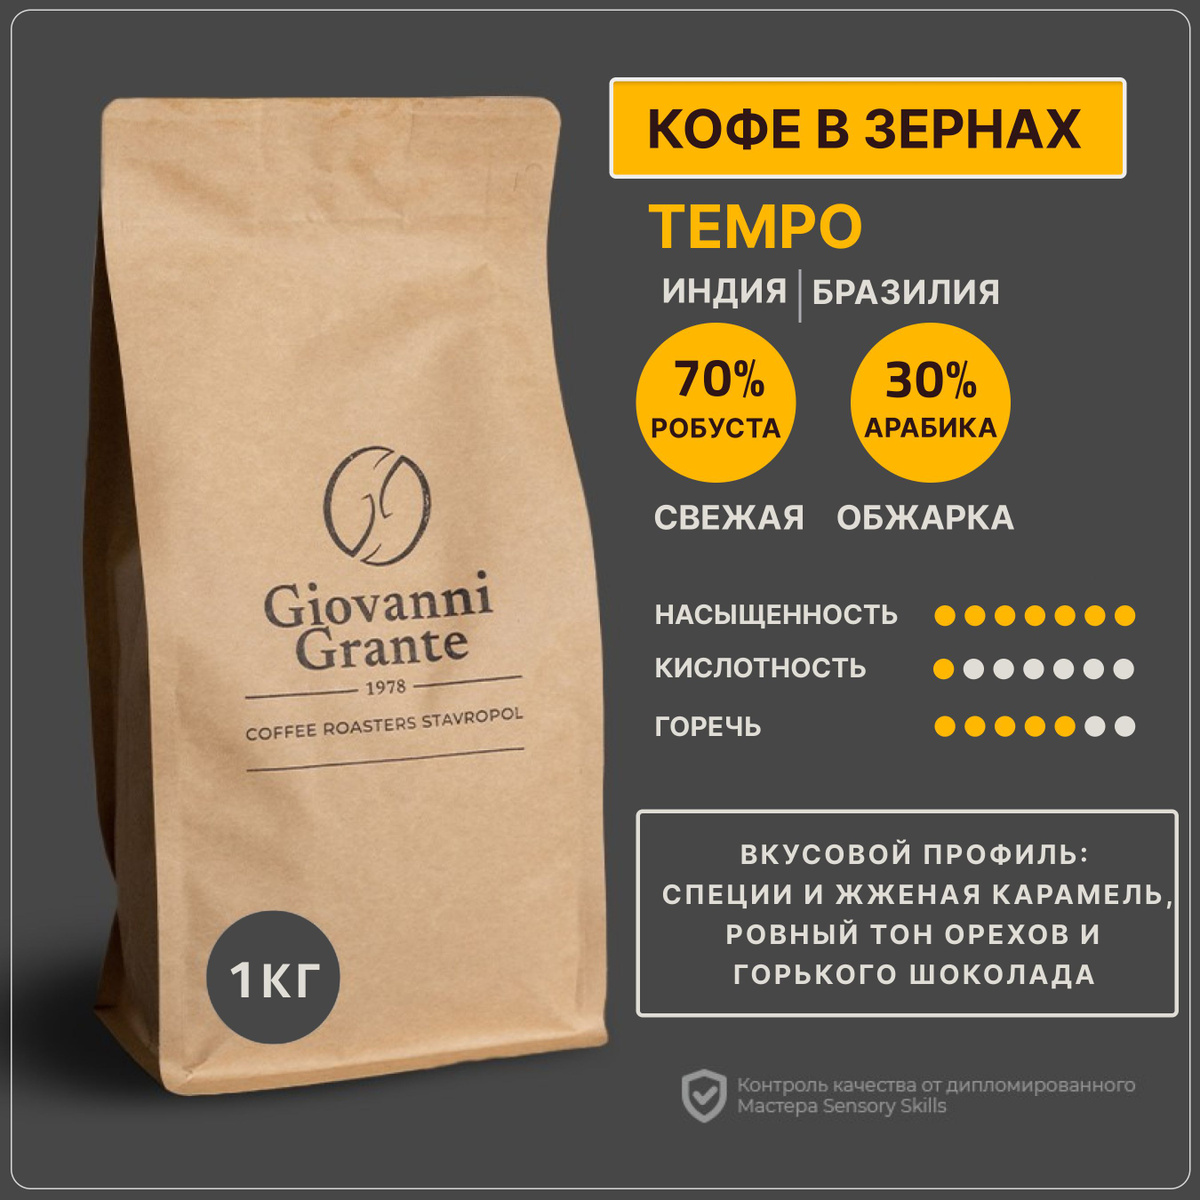 Кофе в зернах смесь 70% робусты/ 30% арабики TEMPO. Для тех, кто любит покрепче.